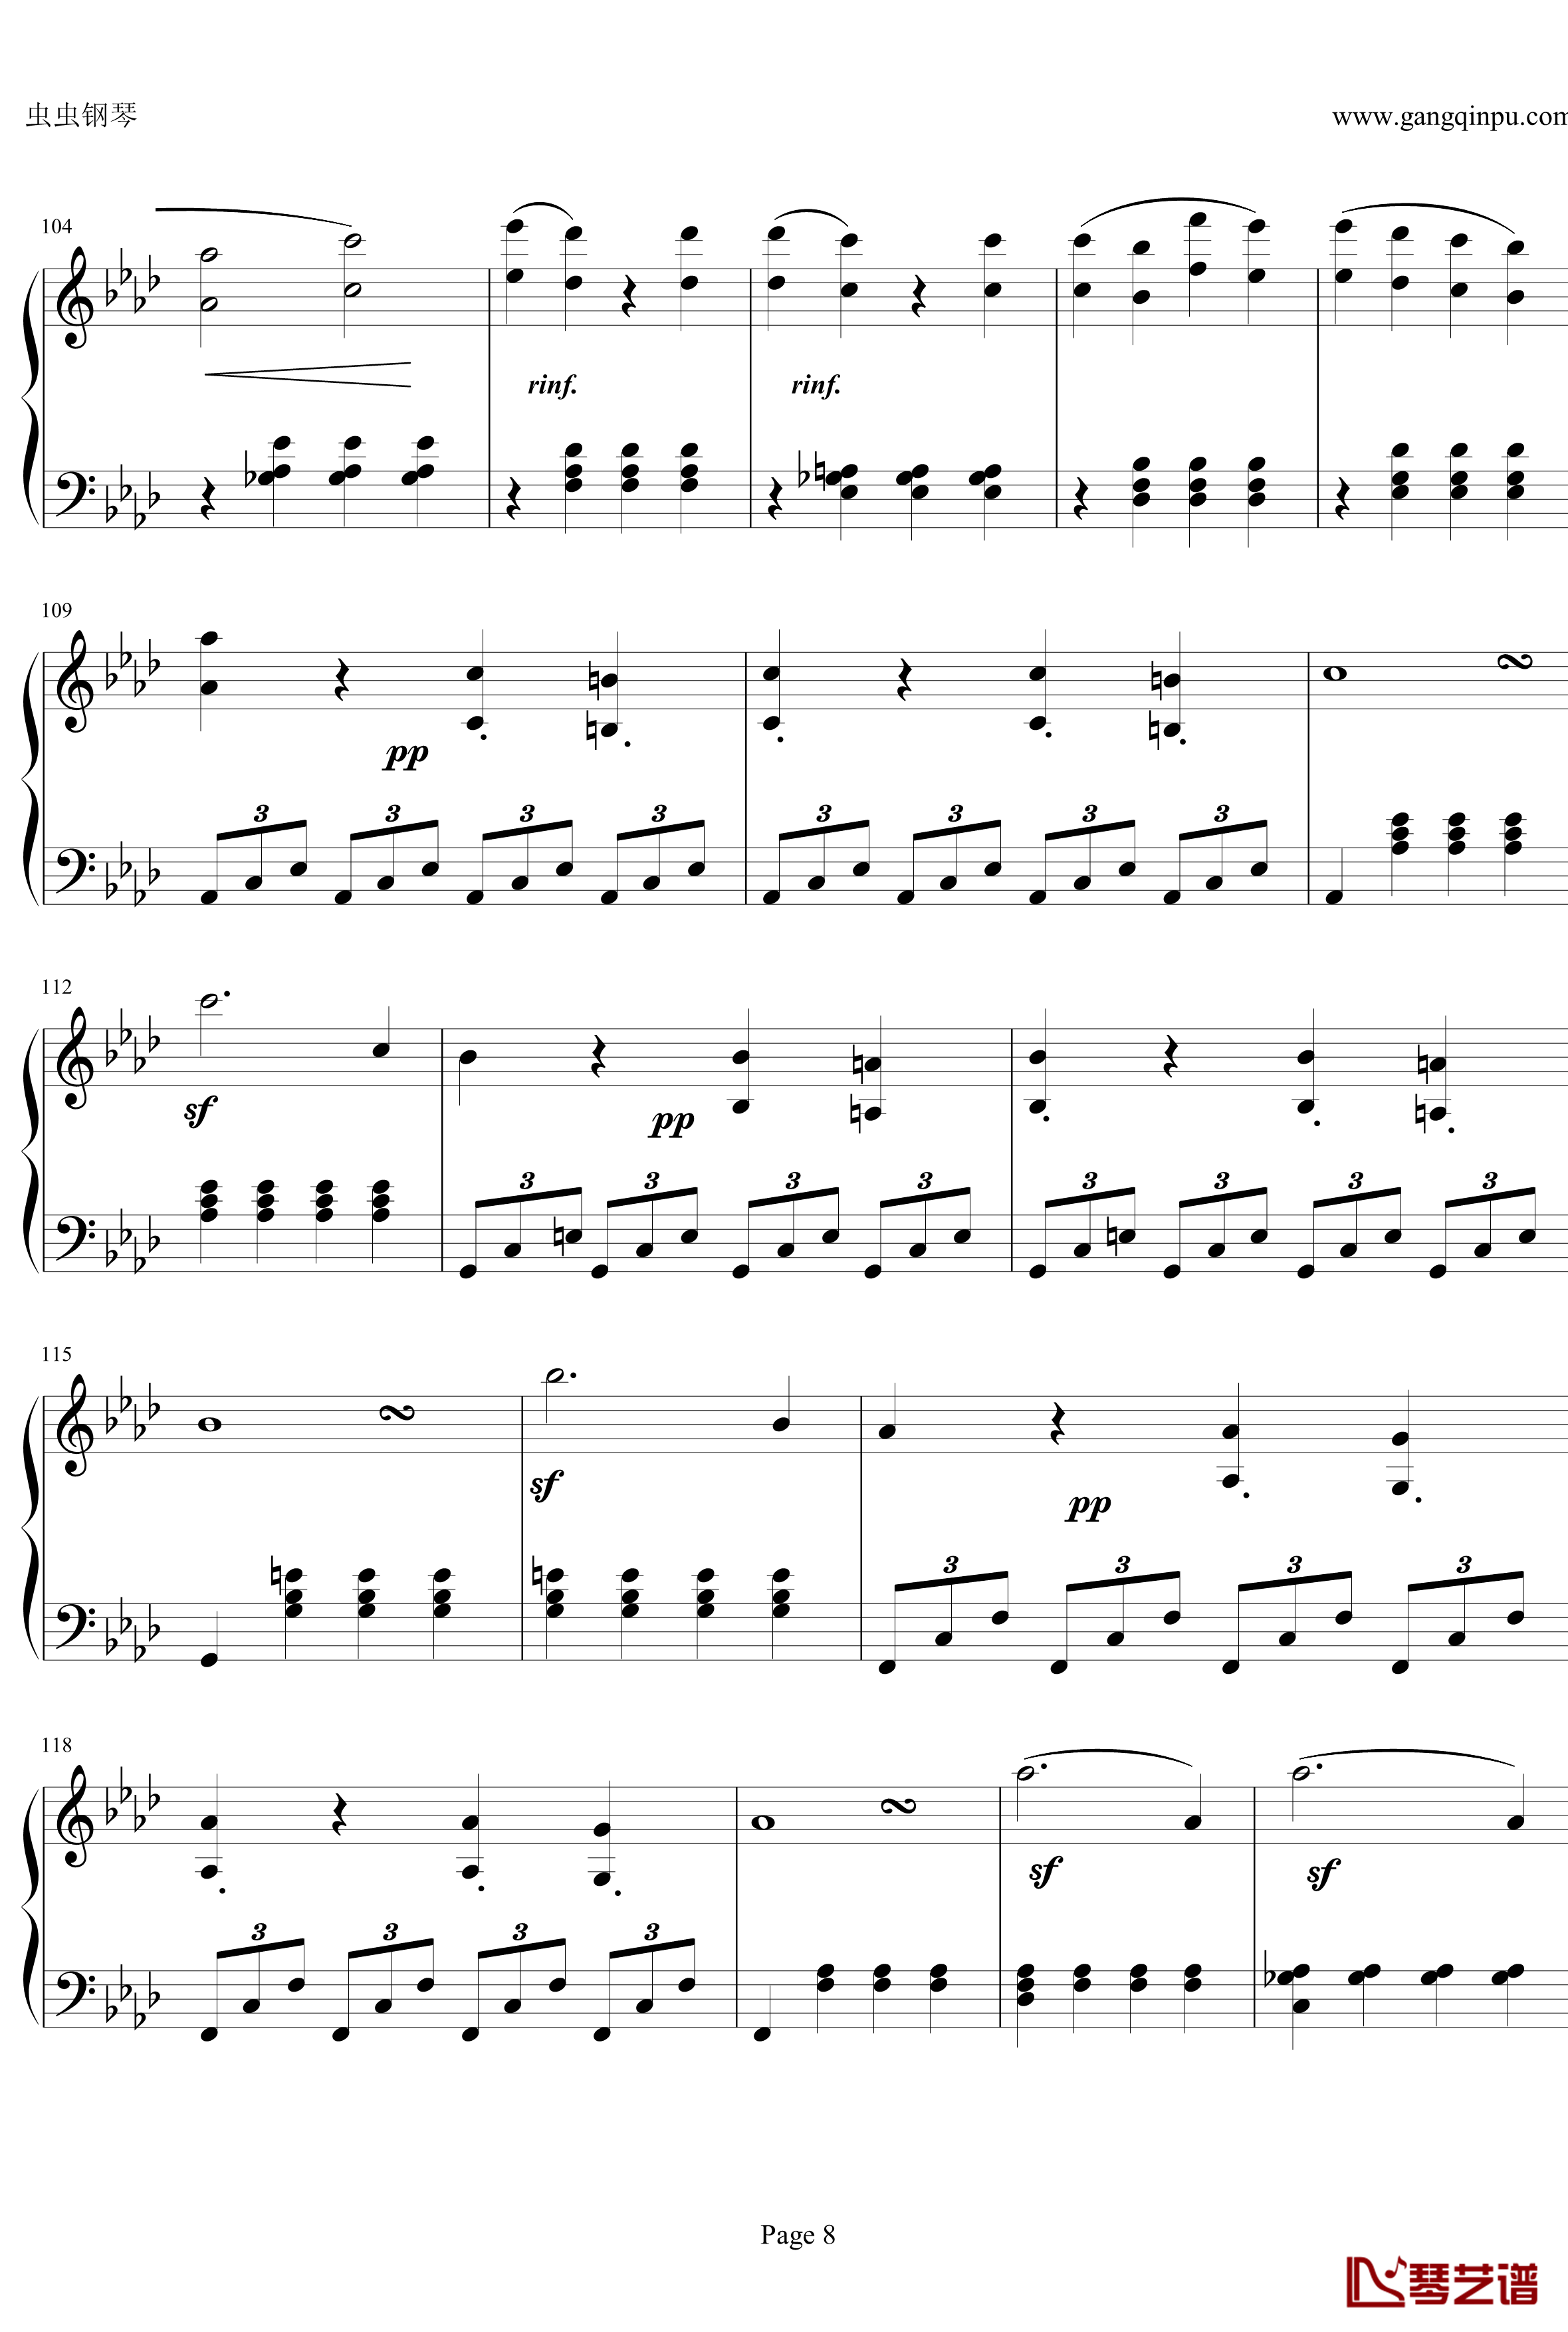 贝多芬第一钢琴奏鸣曲钢琴谱-作品2，第一号-贝多芬-beethoven8